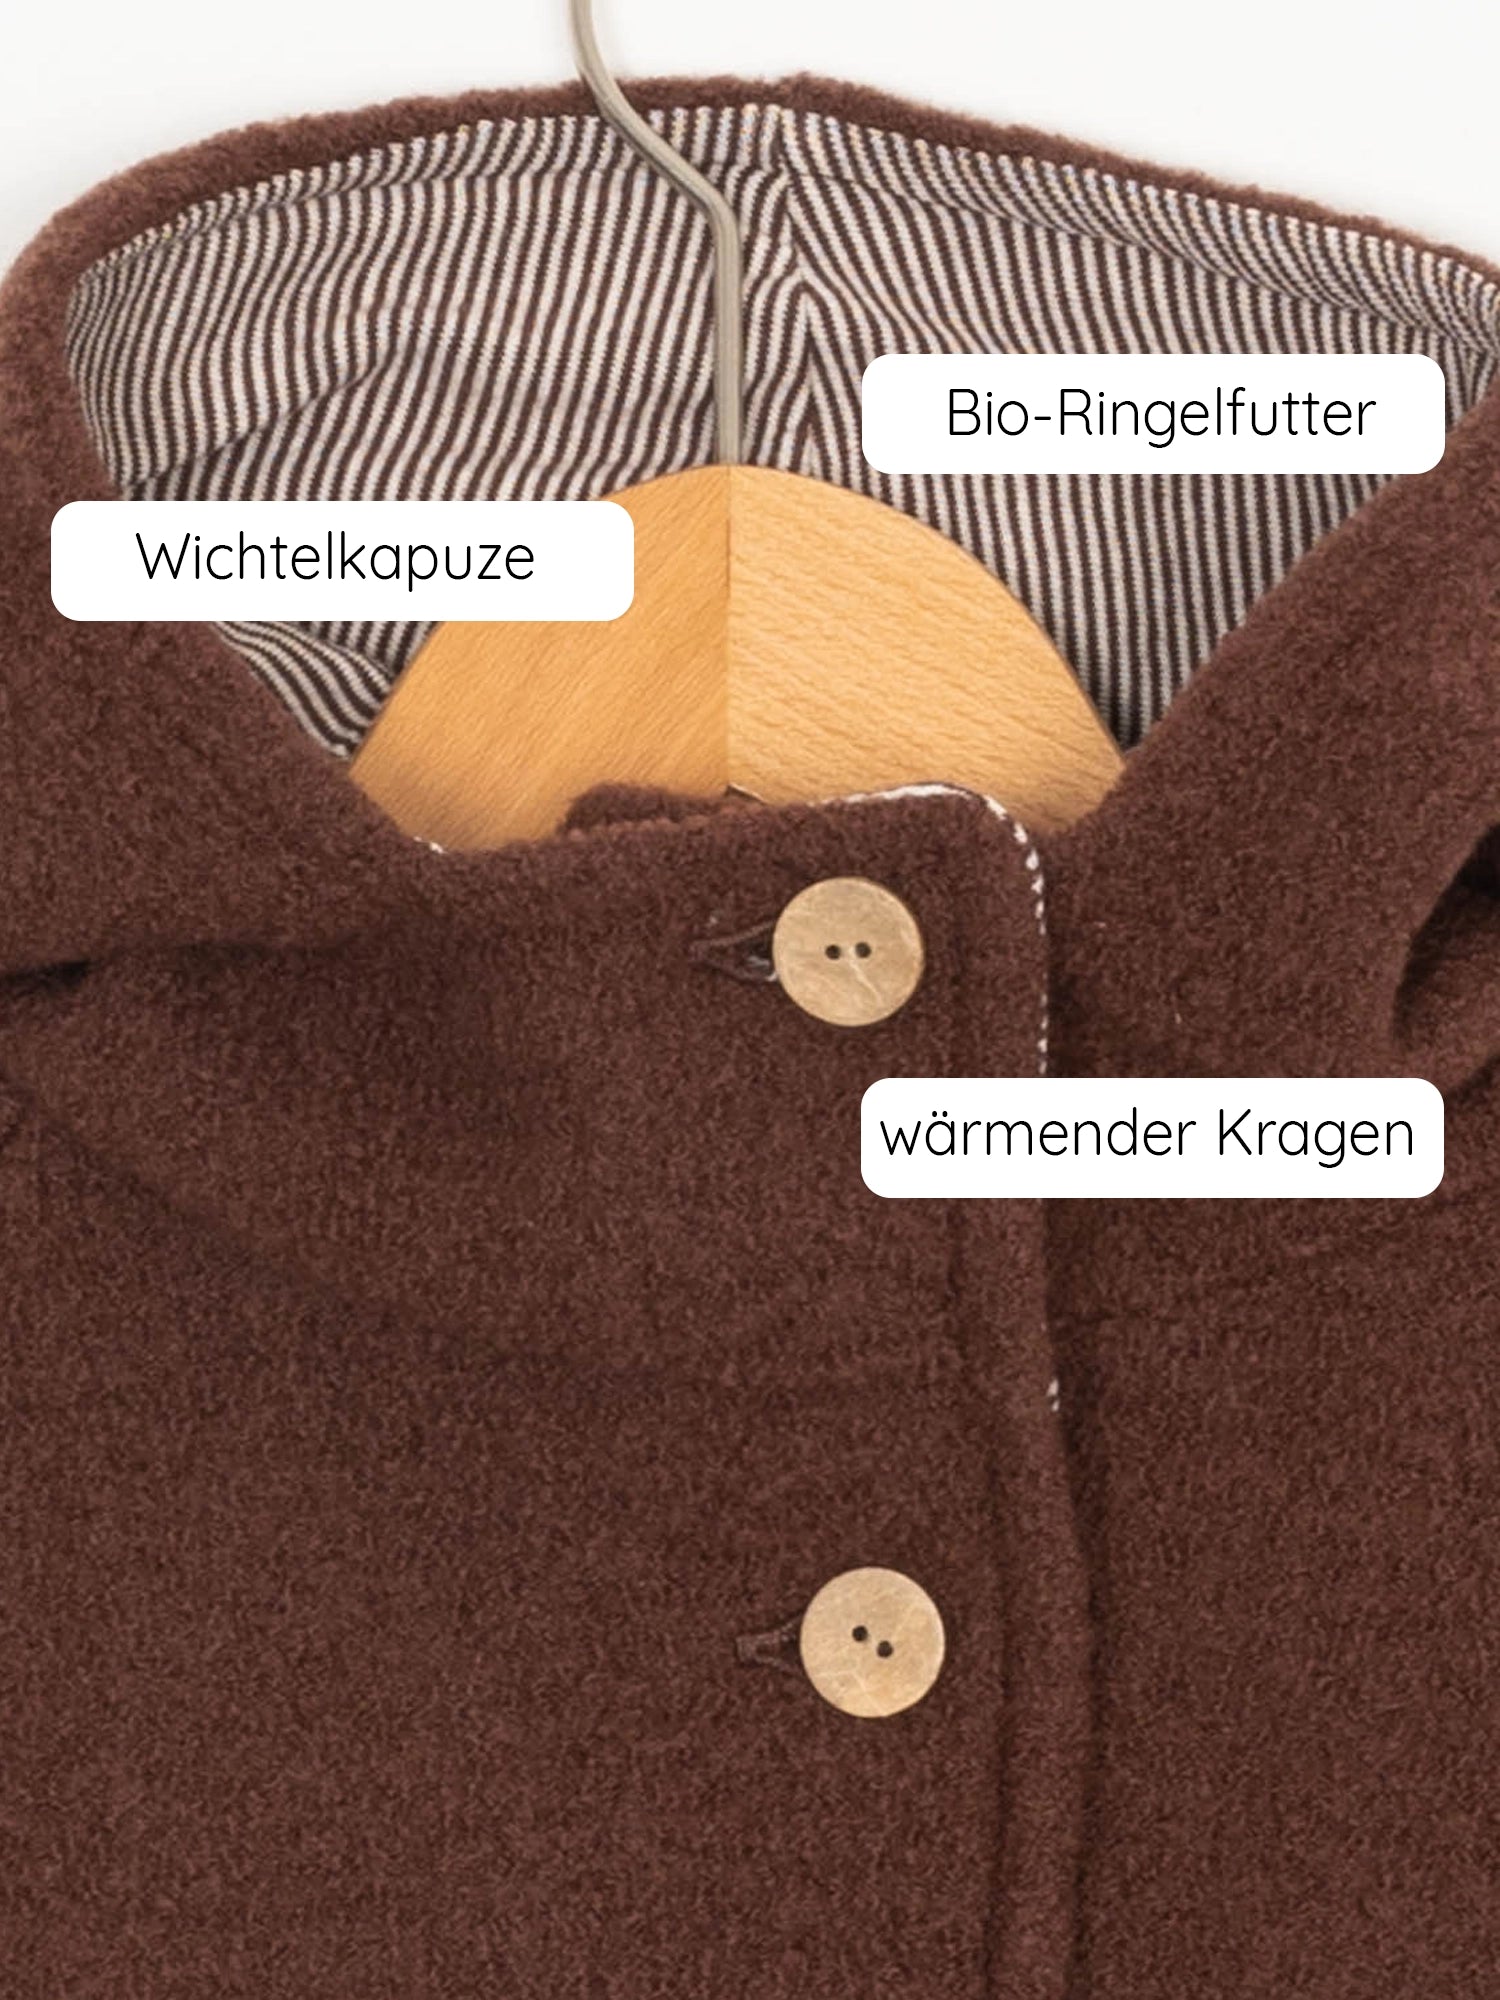 Wichtel jacket woolwalk - chestnut